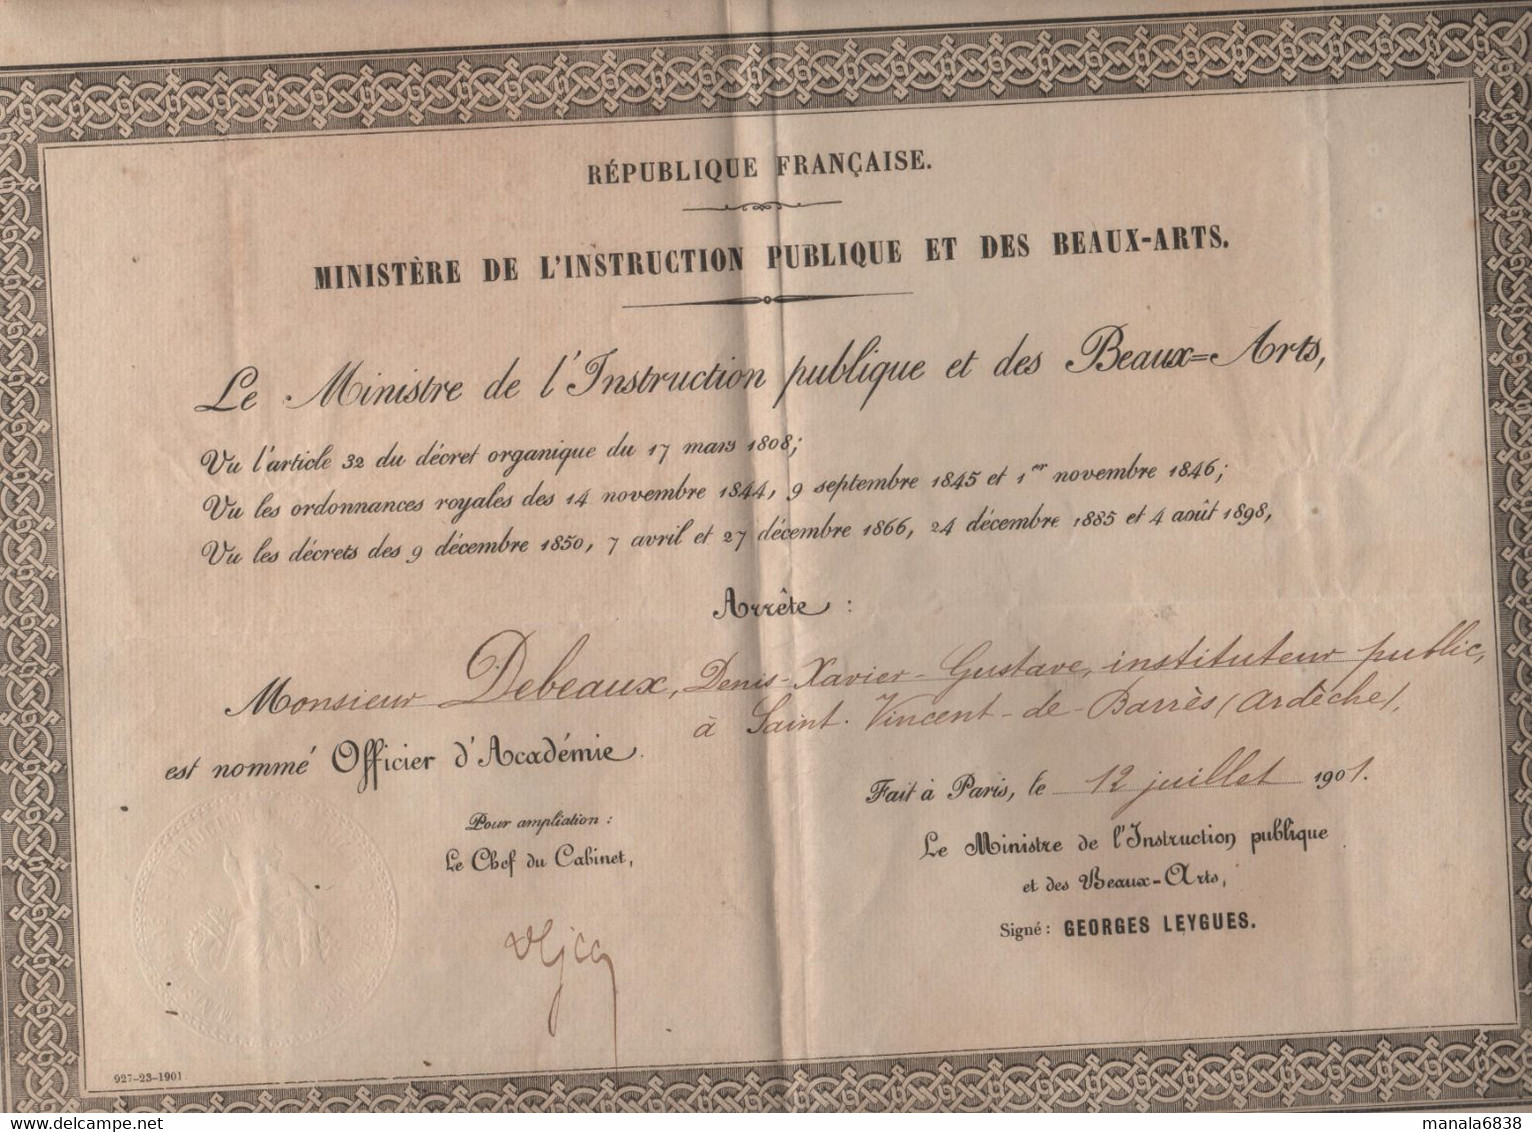 Debeaux Instituteur Saint Vincent De Barrès 1901 Leygues - Diploma's En Schoolrapporten